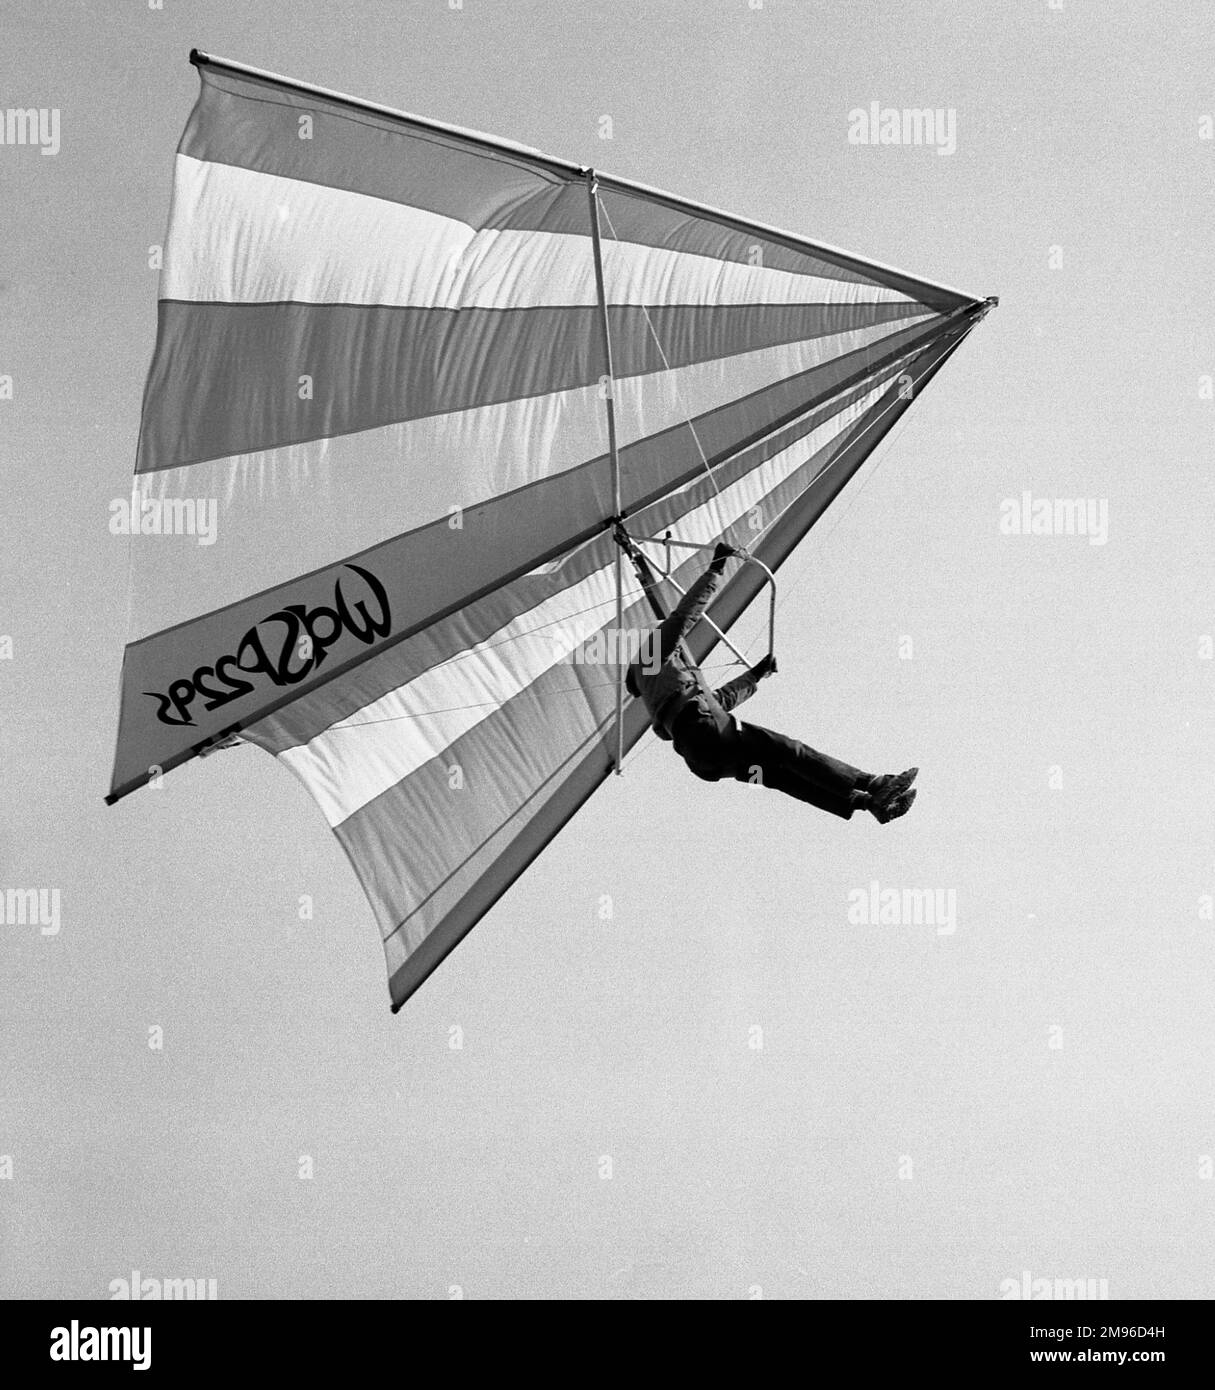 A man flies through the air on a hang glider. Stock Photo